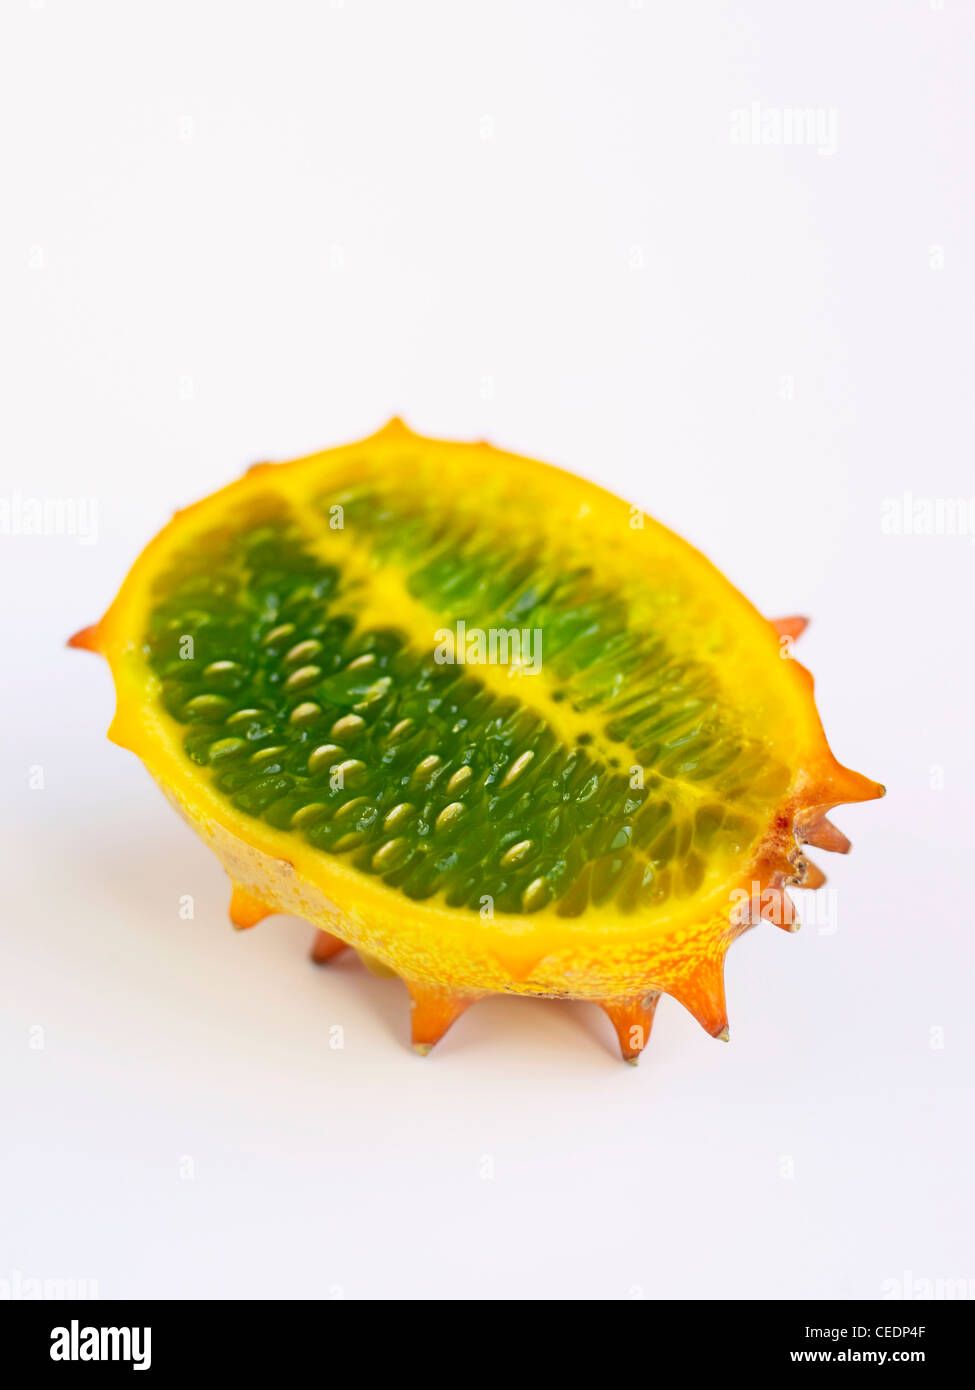 Horned Melon, Kiwano, Kawani Fruit Stock Photo